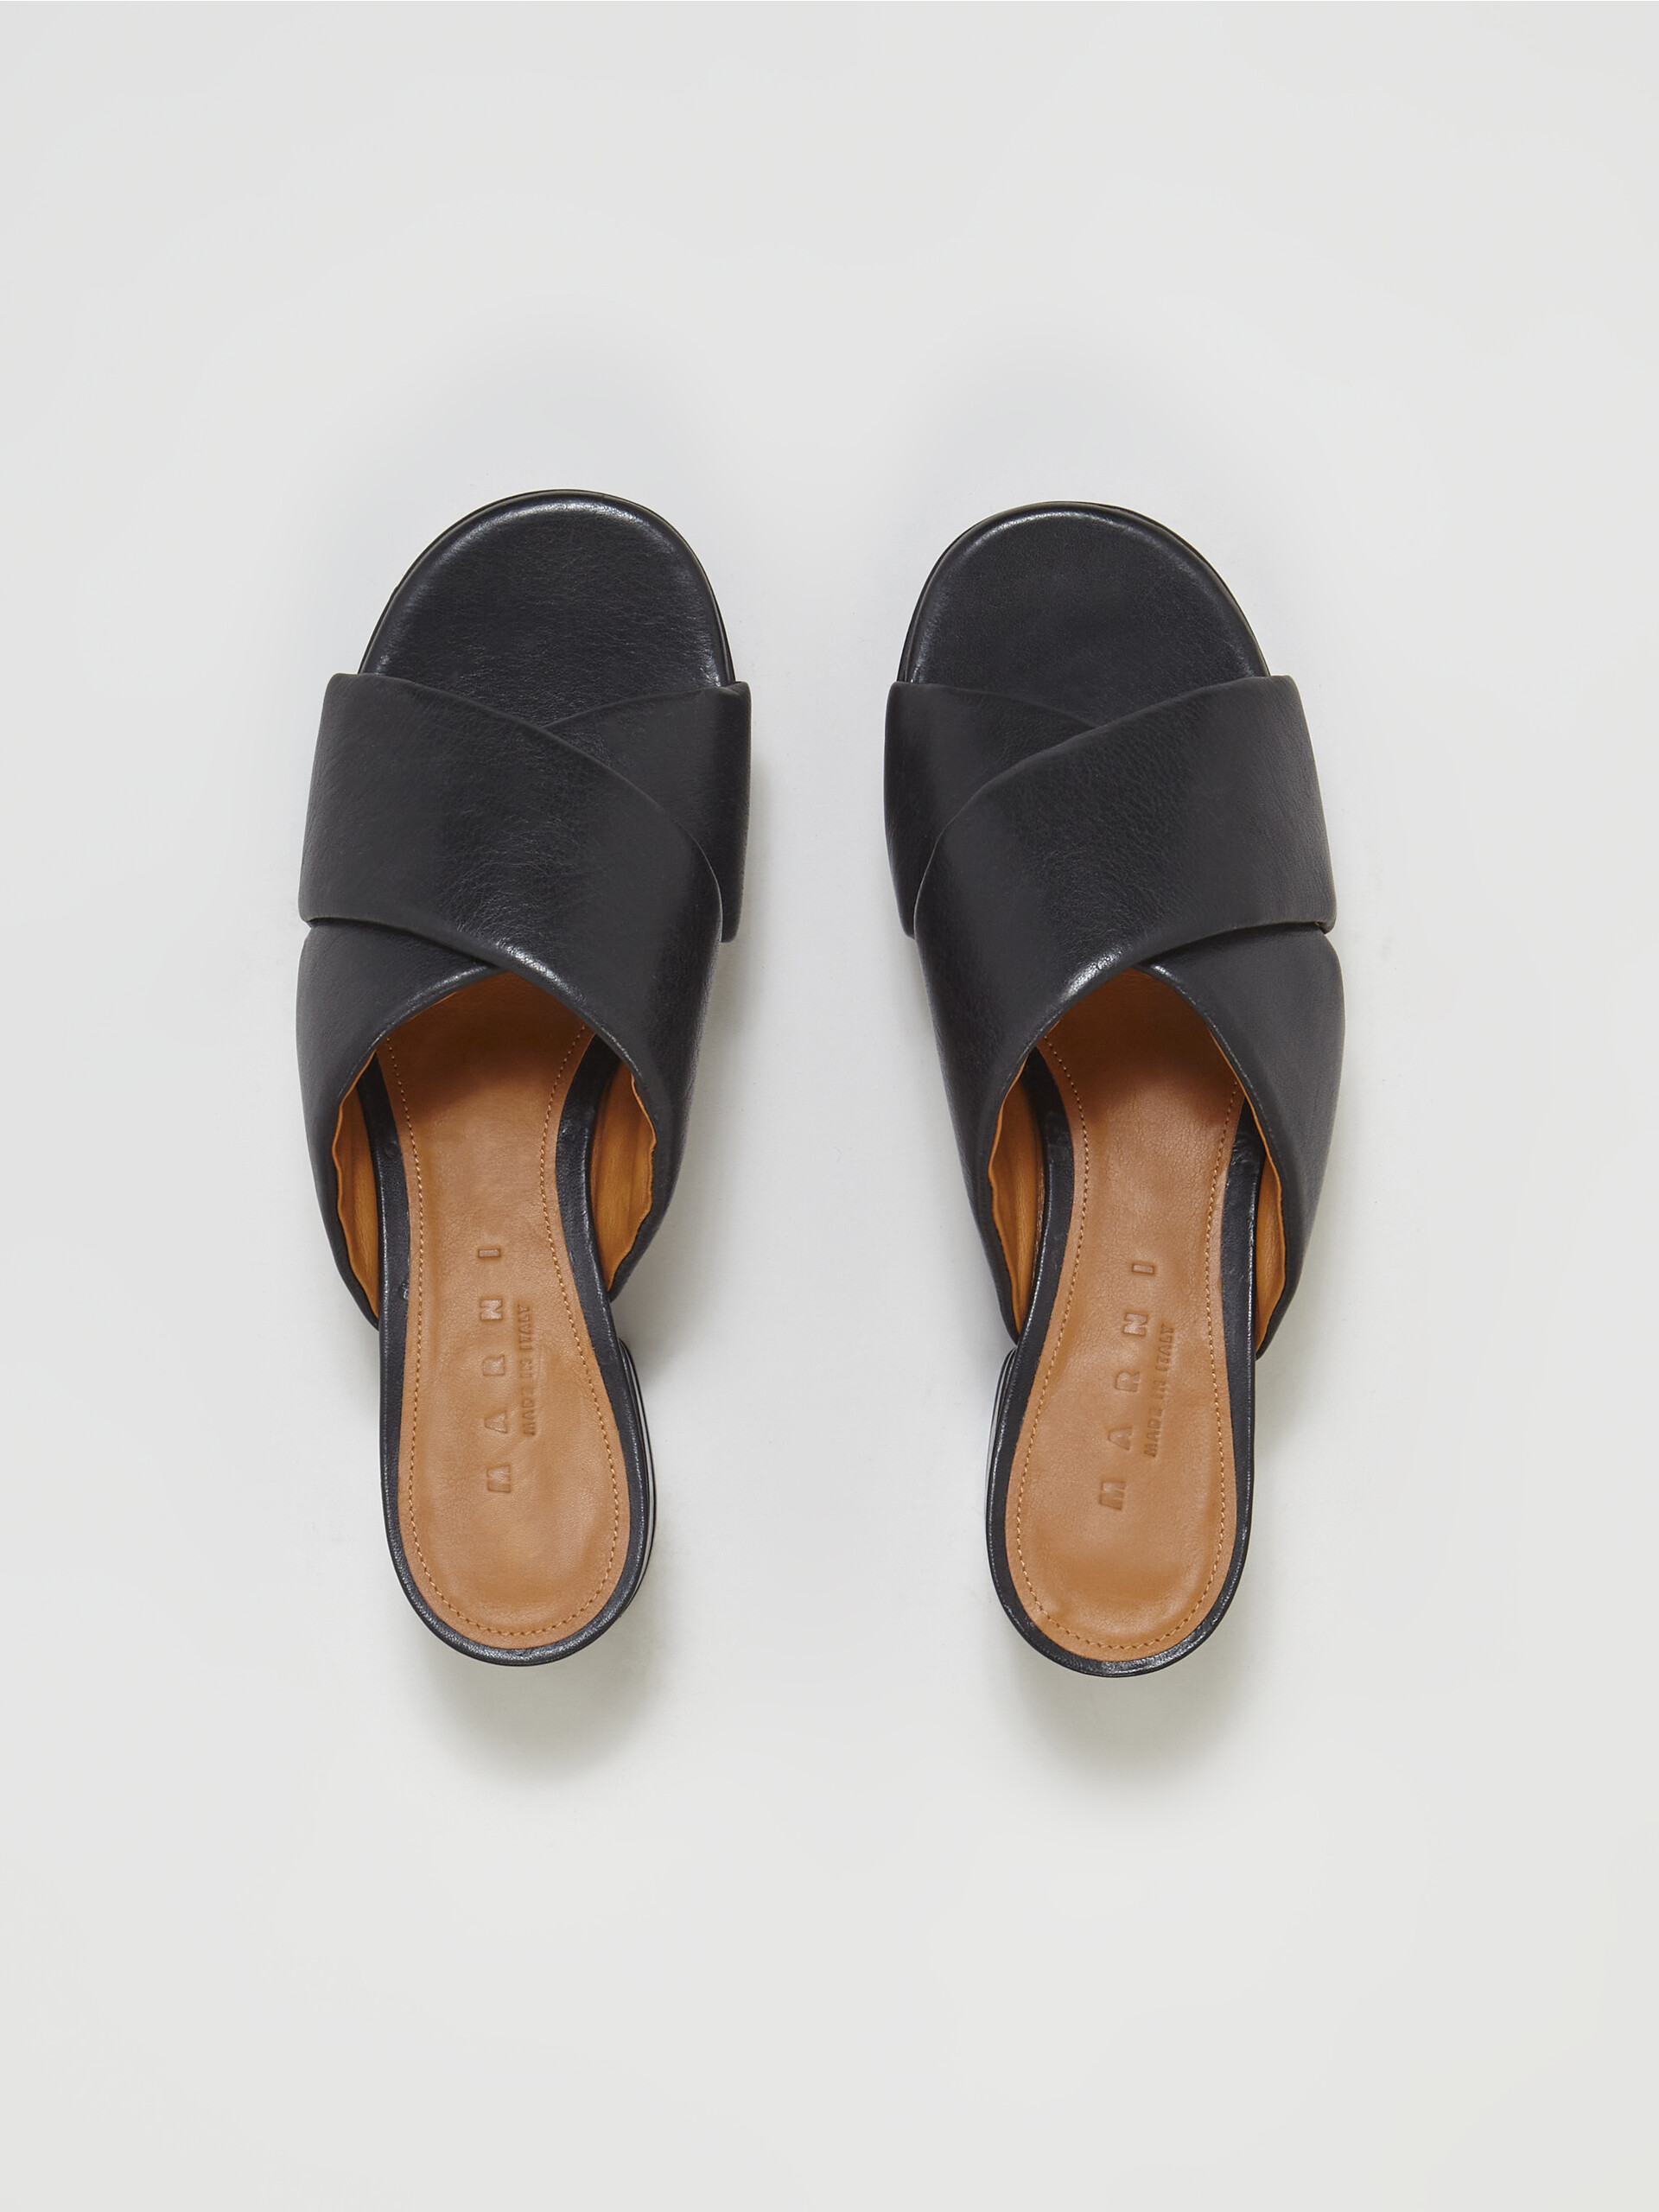 Black vegetable-tanned leather sandal - Sandals - Image 4